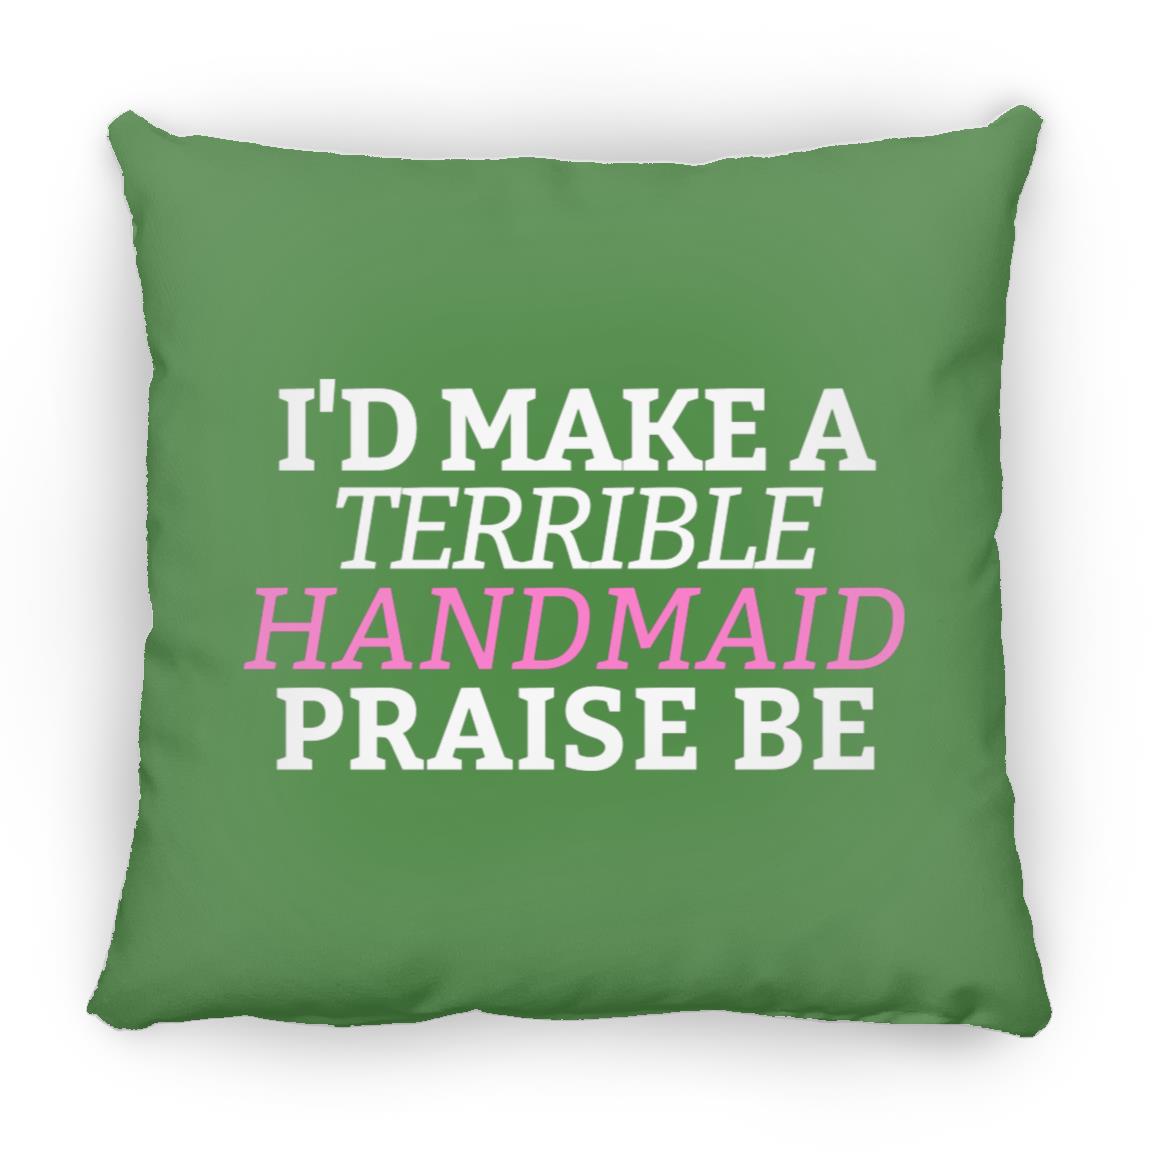 I'd Make A Terrible Handmaid. Praise Be. Throw Pillow